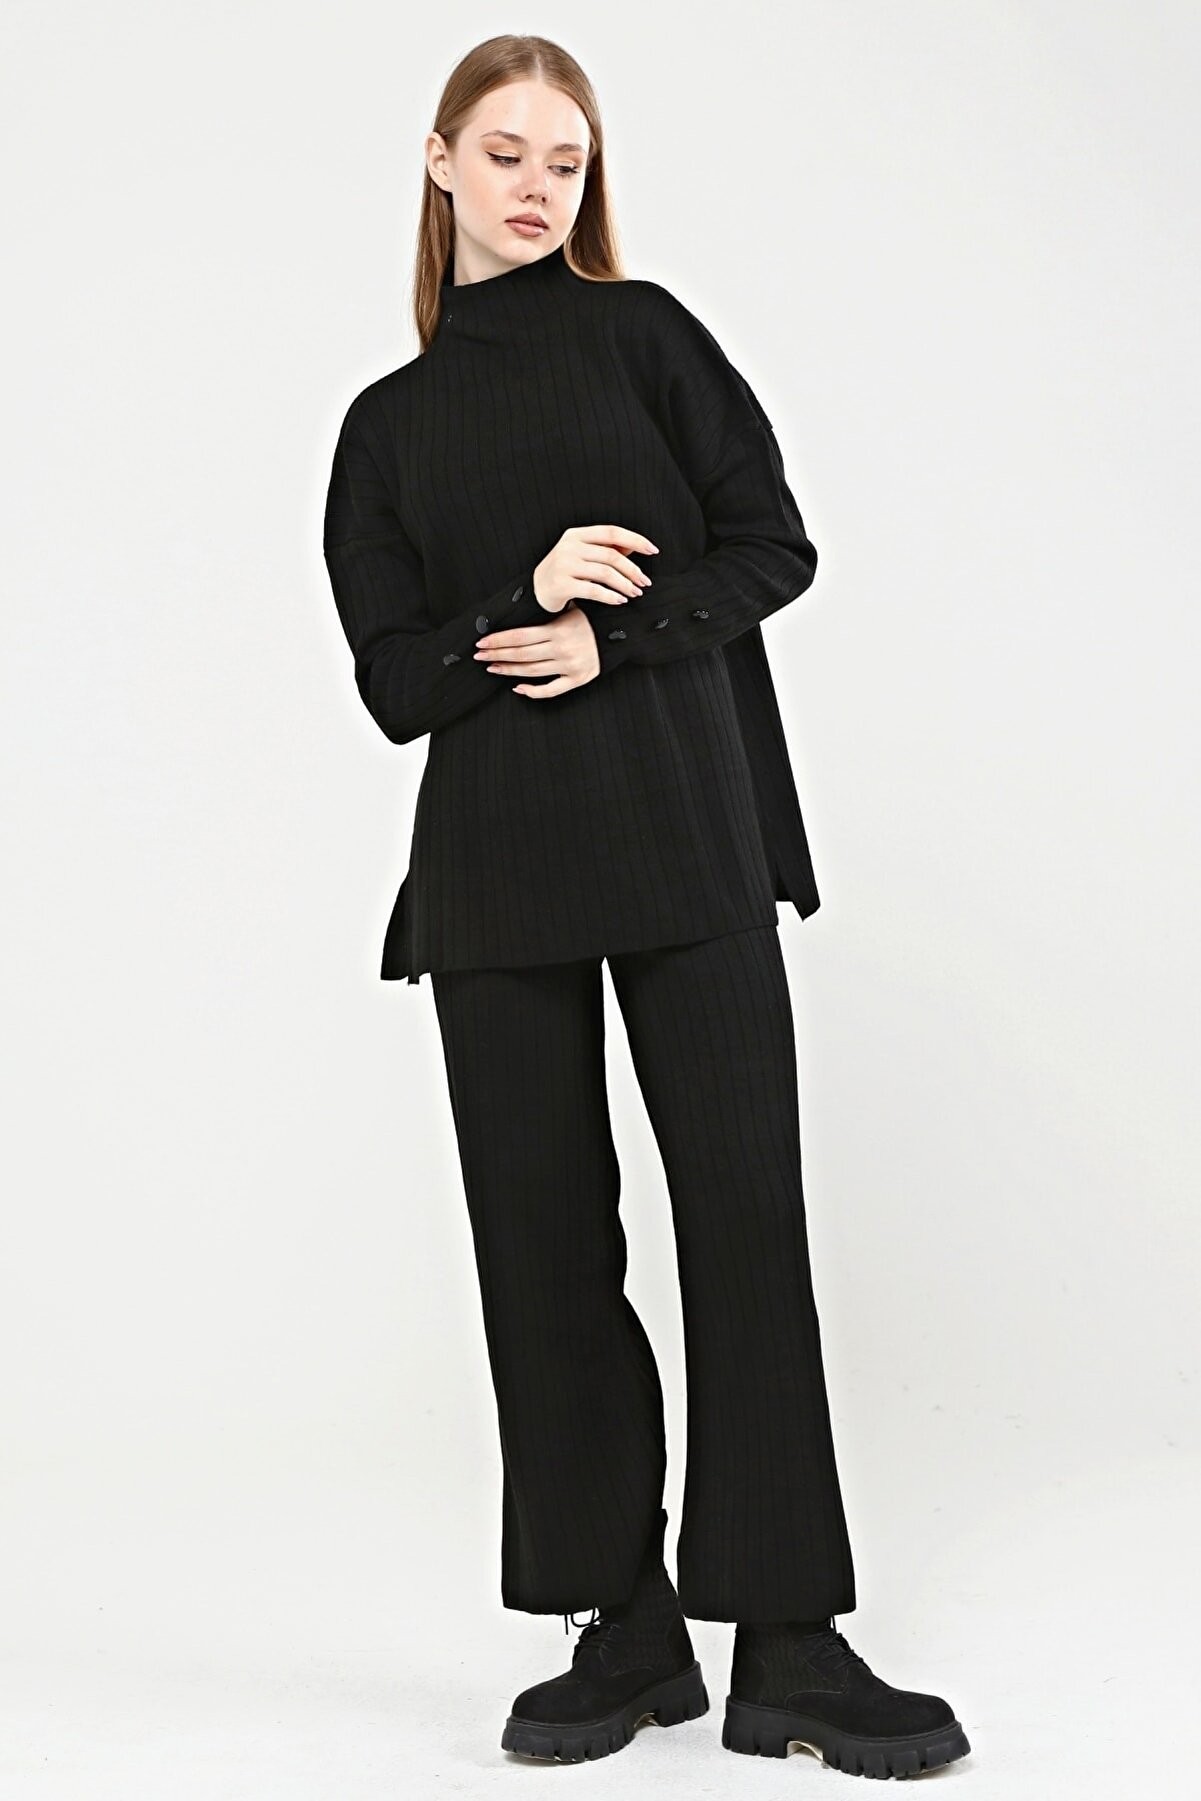 Kadın Düğme Detaylı Kazak Pantolon Triko Alt-Üst Takım - Siyah